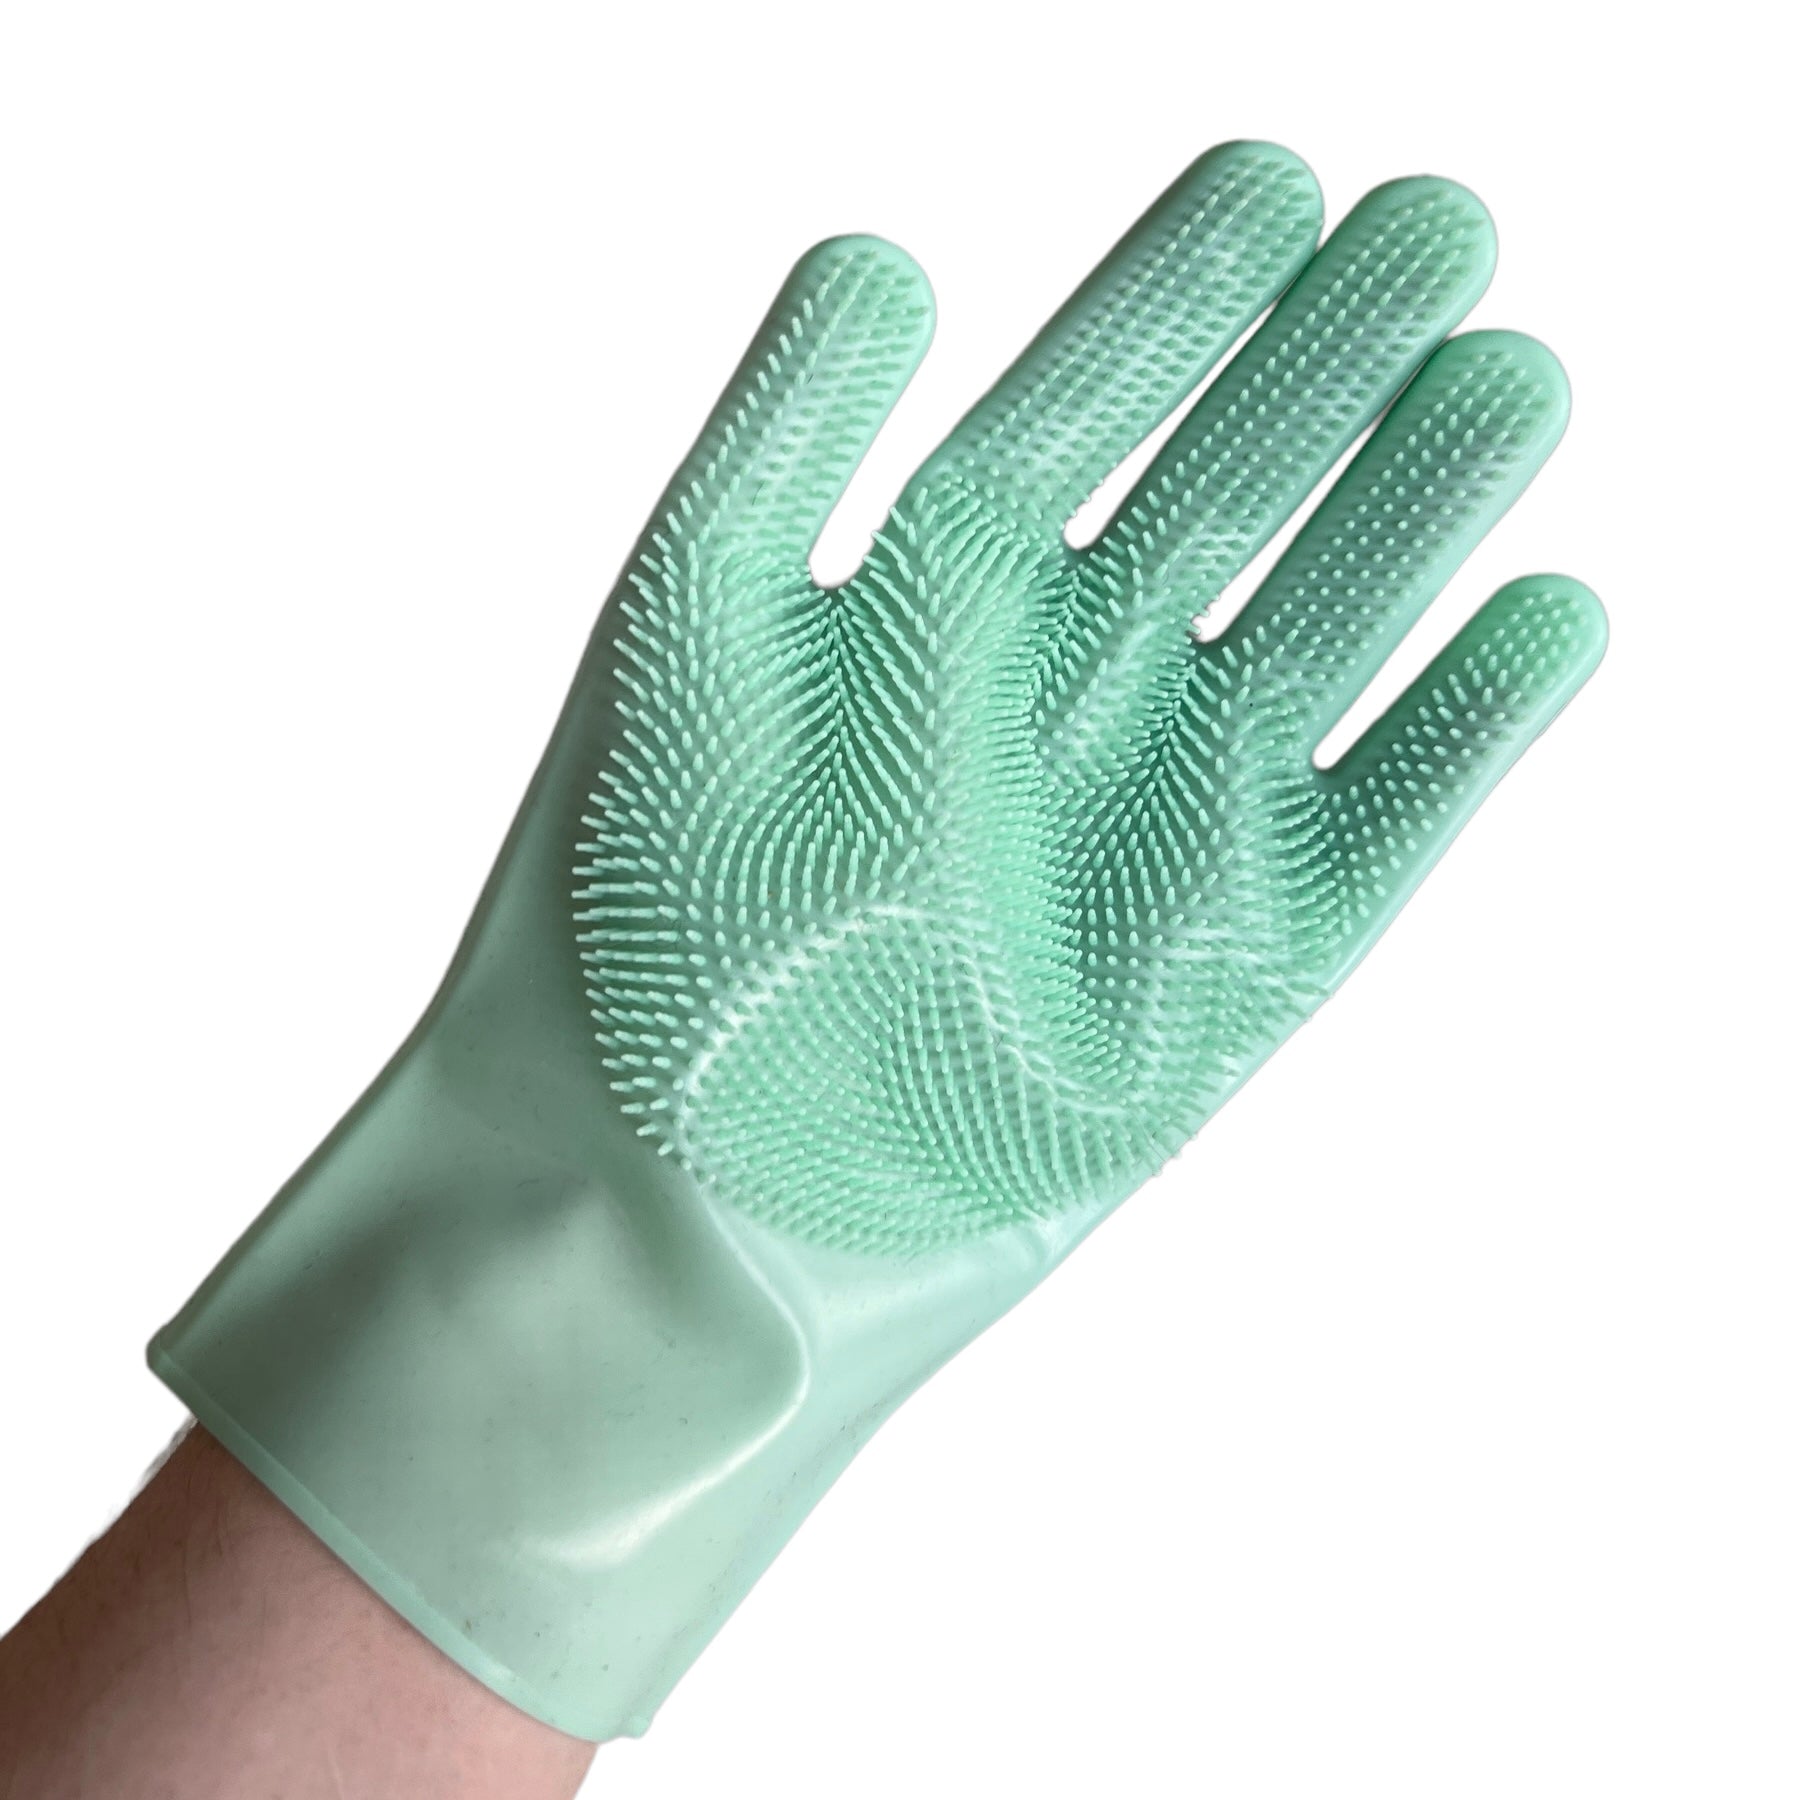 Dish Washing Scrubber Gloves  SPIRIT SPARKPLUGS Mint  